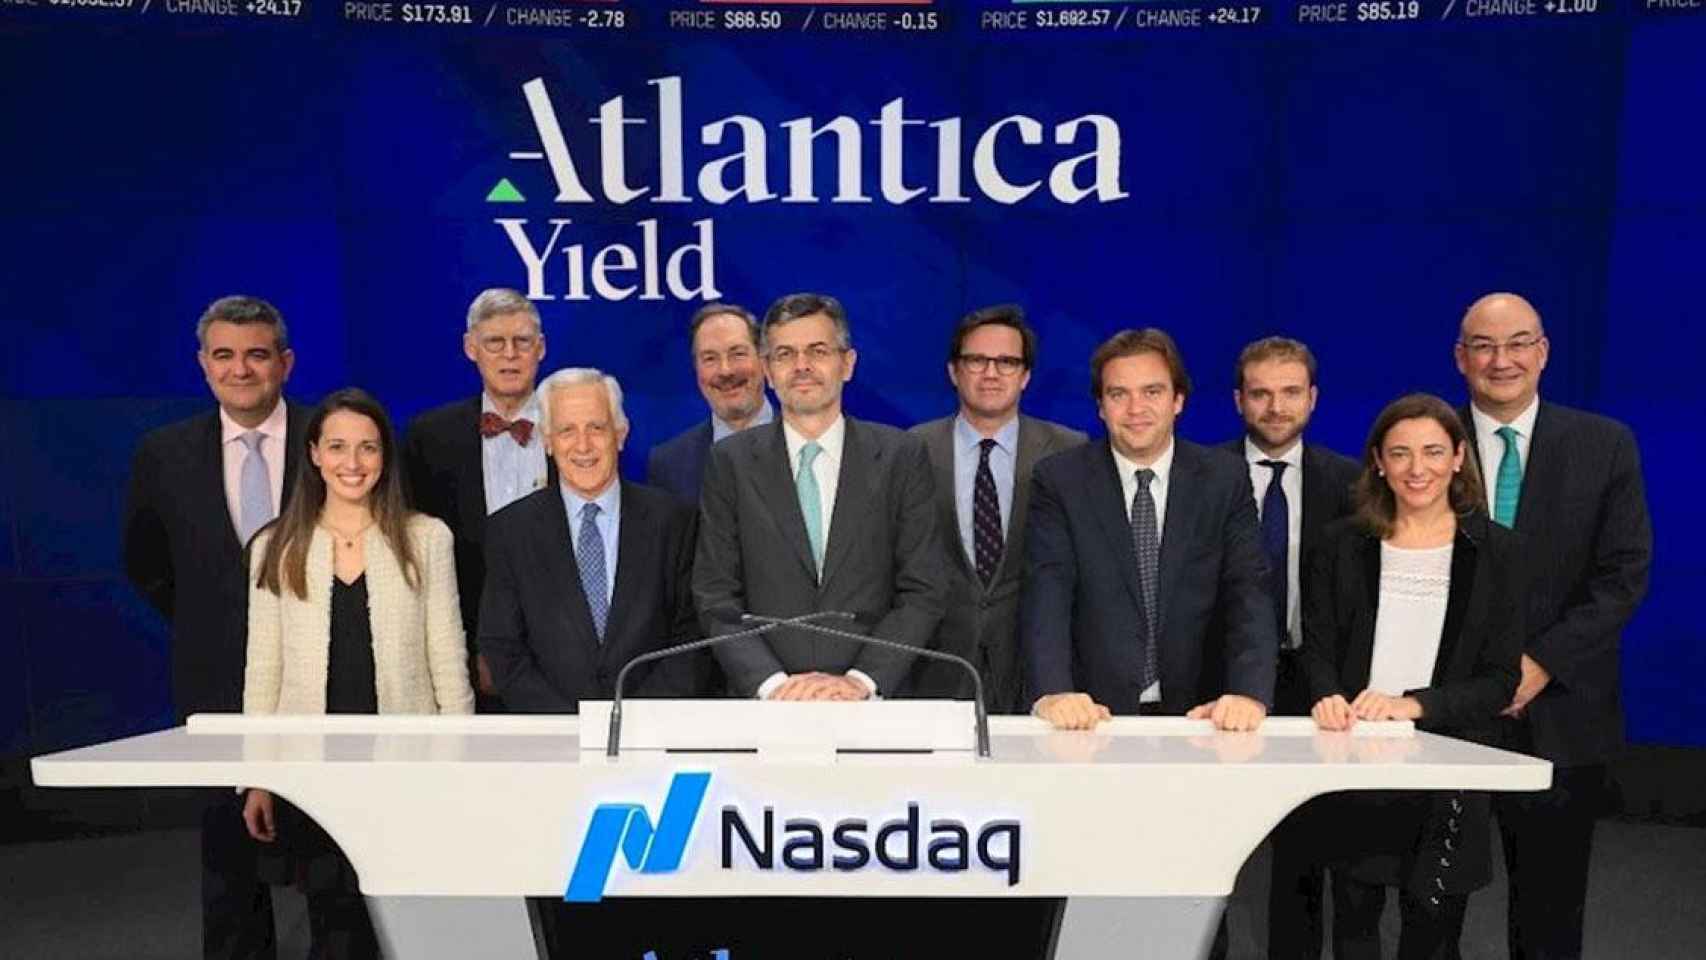 Presentación de Atlantica Yield en el Nasdaq / ATLANTICA YIELD